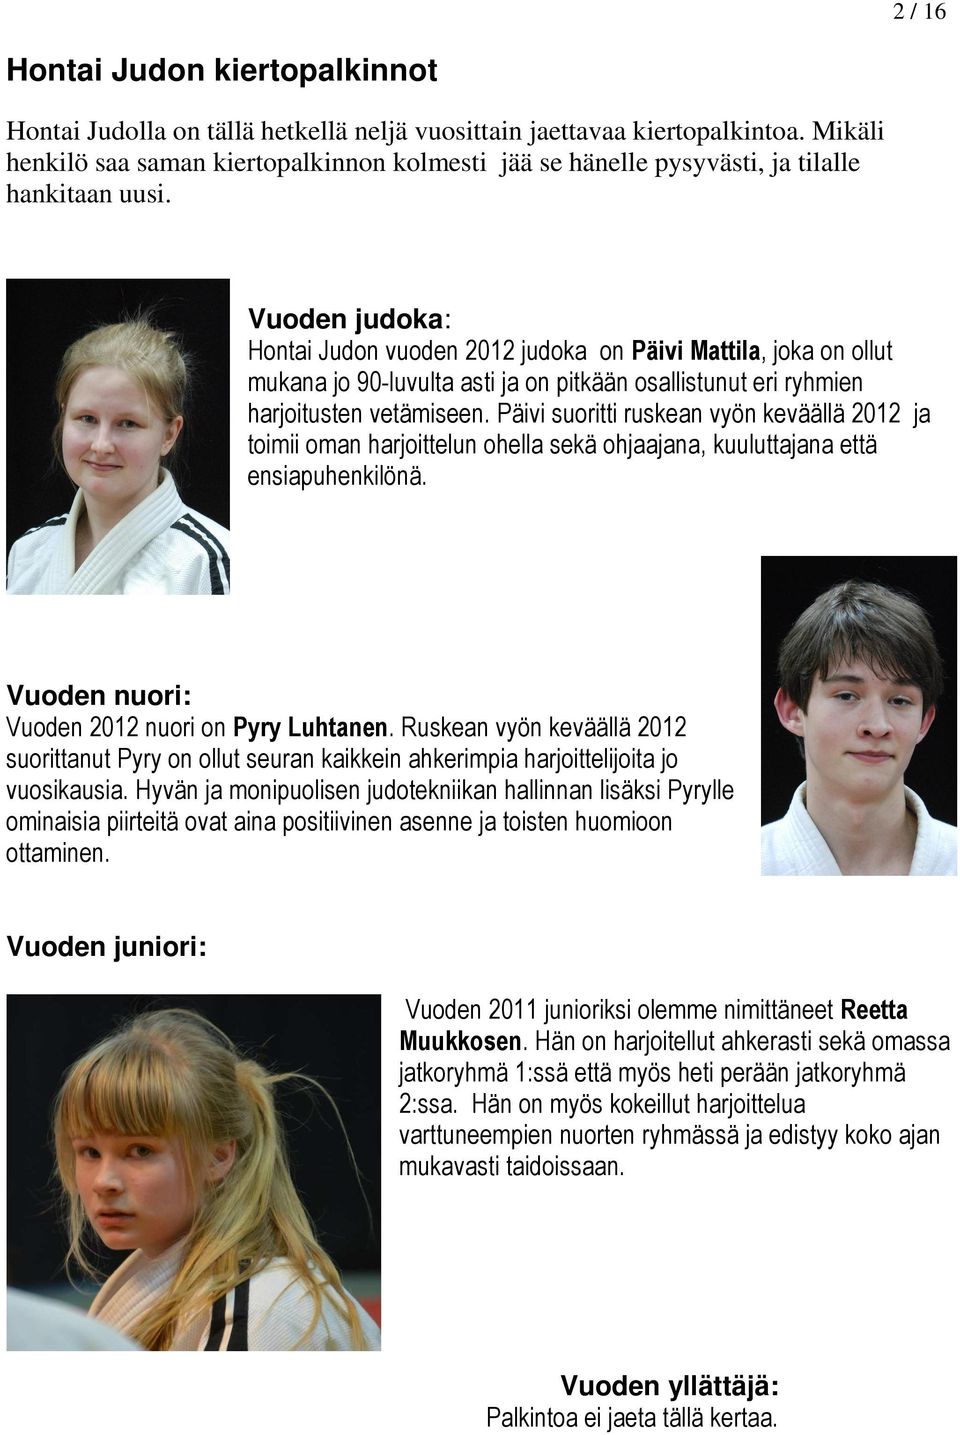 Vuoden judoka: Hontai Judon vuoden 2012 judoka on Päivi Mattila, joka on ollut mukana jo 90-luvulta asti ja on pitkään osallistunut eri ryhmien harjoitusten vetämiseen.